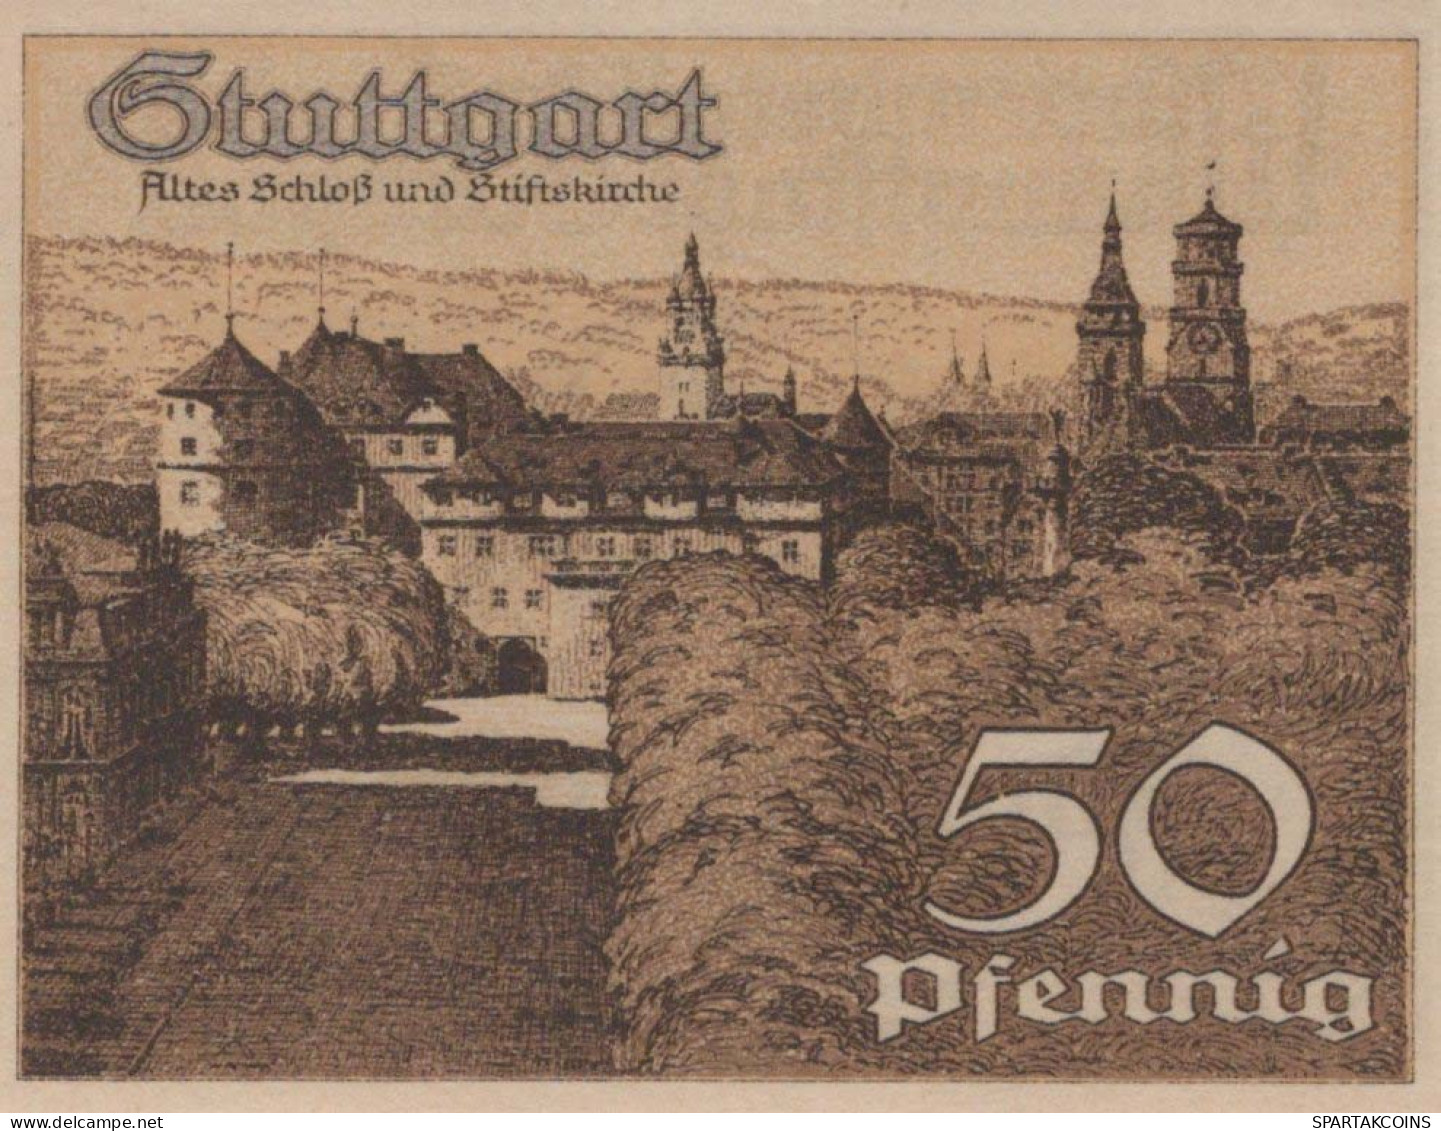 50 PFENNIG 1921 Stadt STUTTGART Württemberg UNC DEUTSCHLAND Notgeld #PC417 - [11] Local Banknote Issues